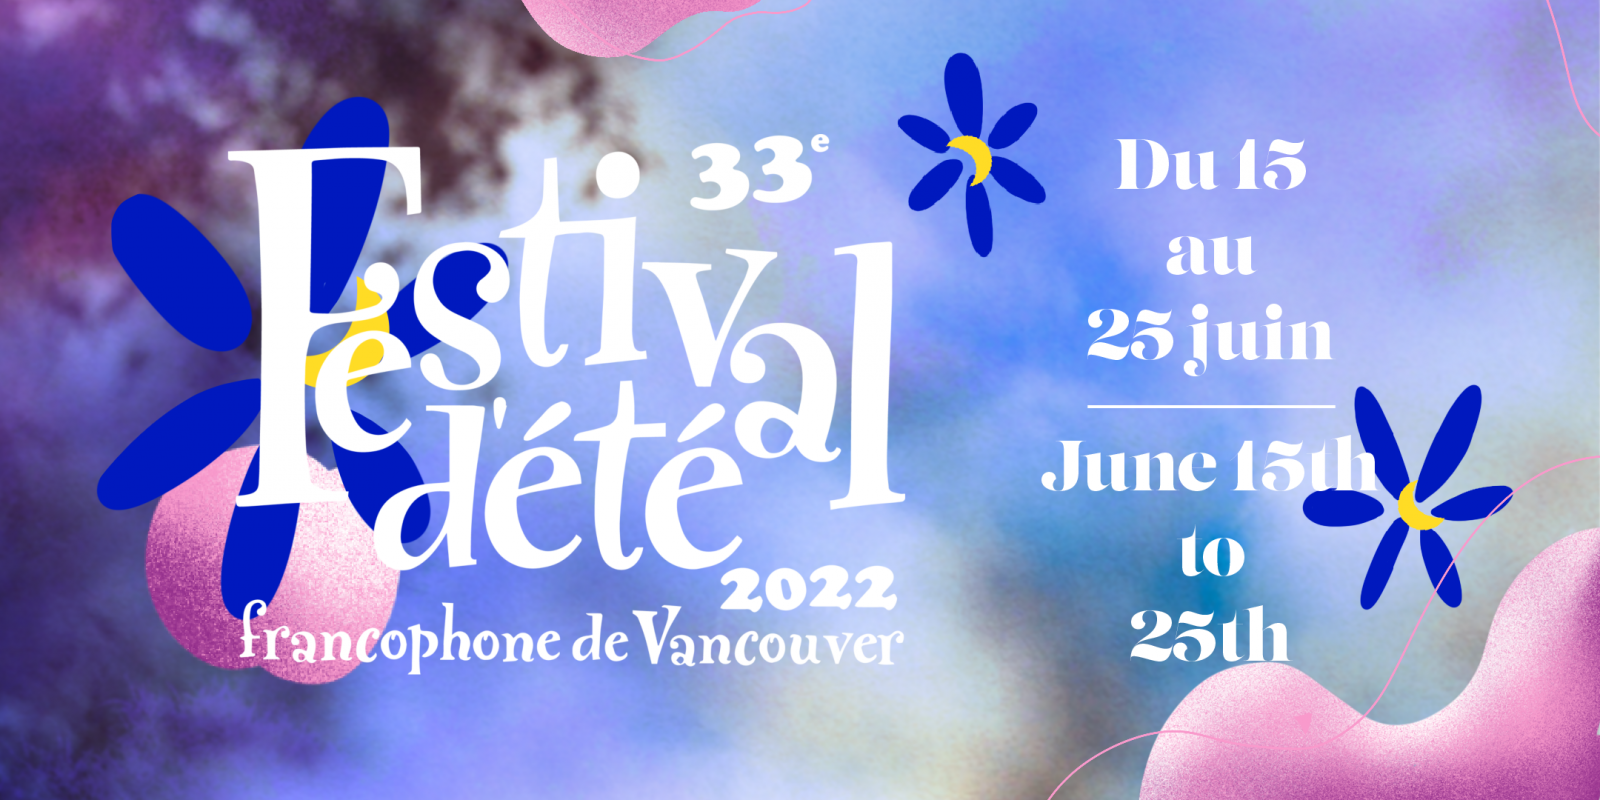 Festival ete francophone vancouver 